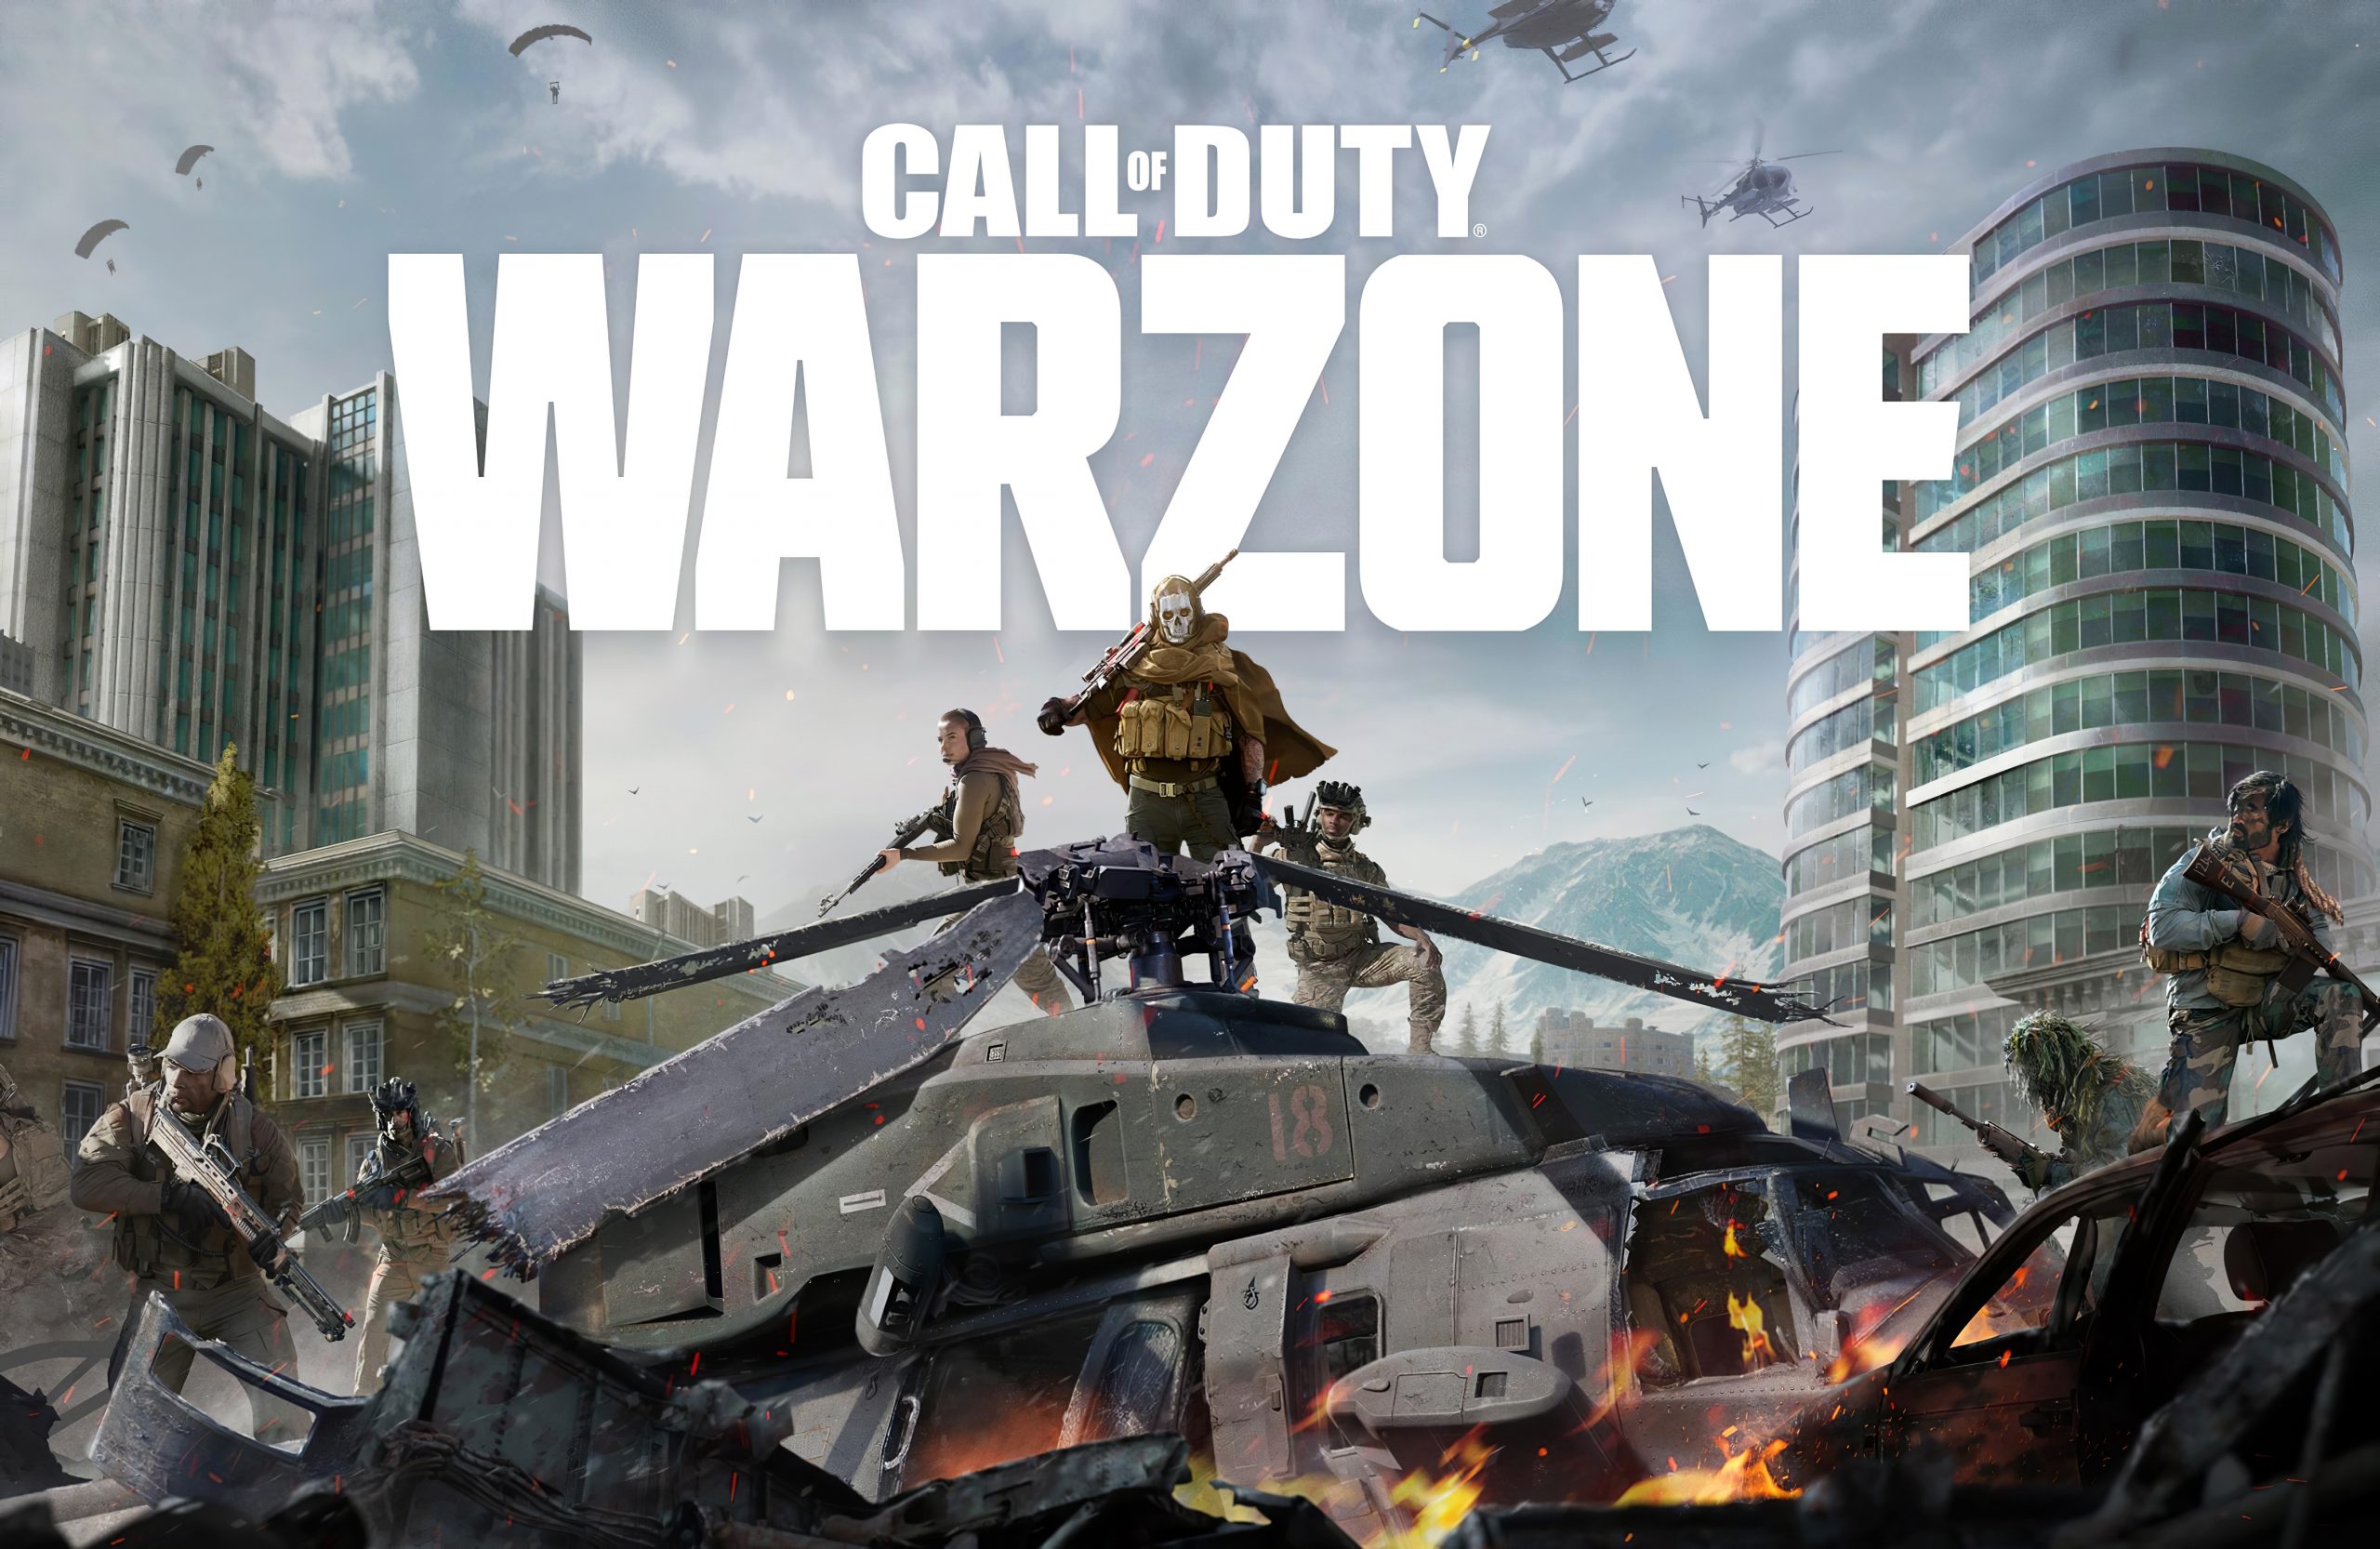  Så här fixar du Call of Duty Warzone dev -fel 6068
